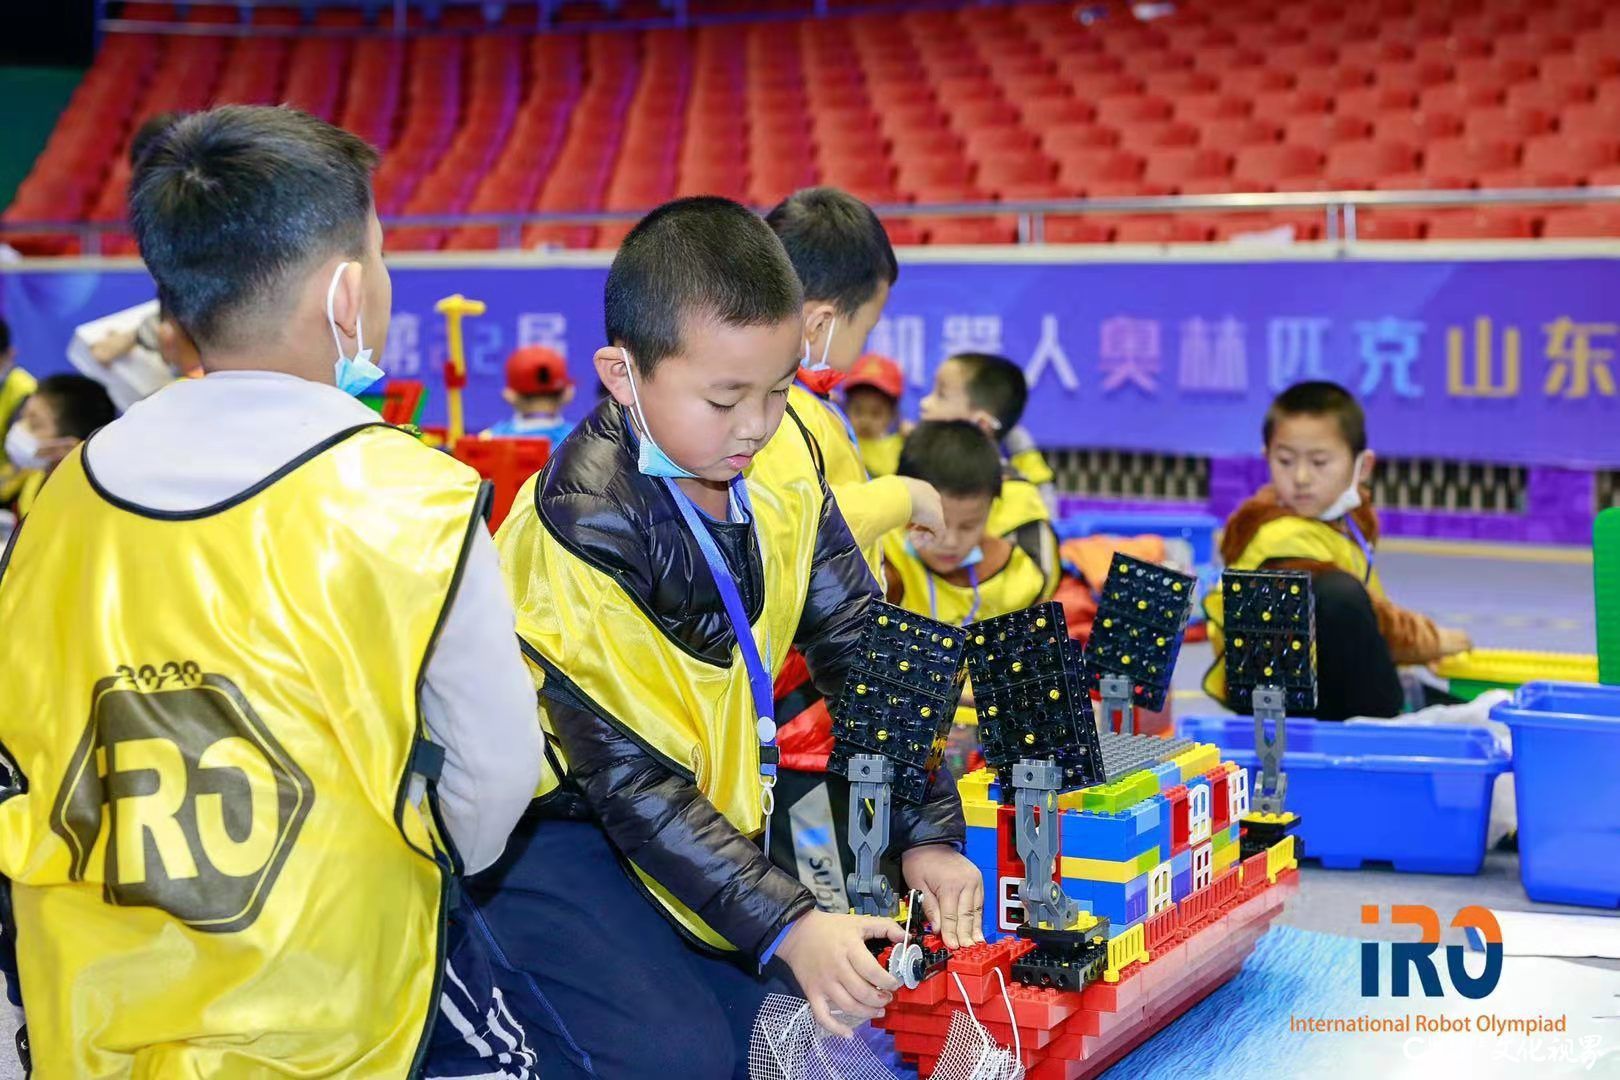 第22届IRO国际机器人奥林匹克山东大赛在济南开赛，近千名选手同场竞技  共展风采